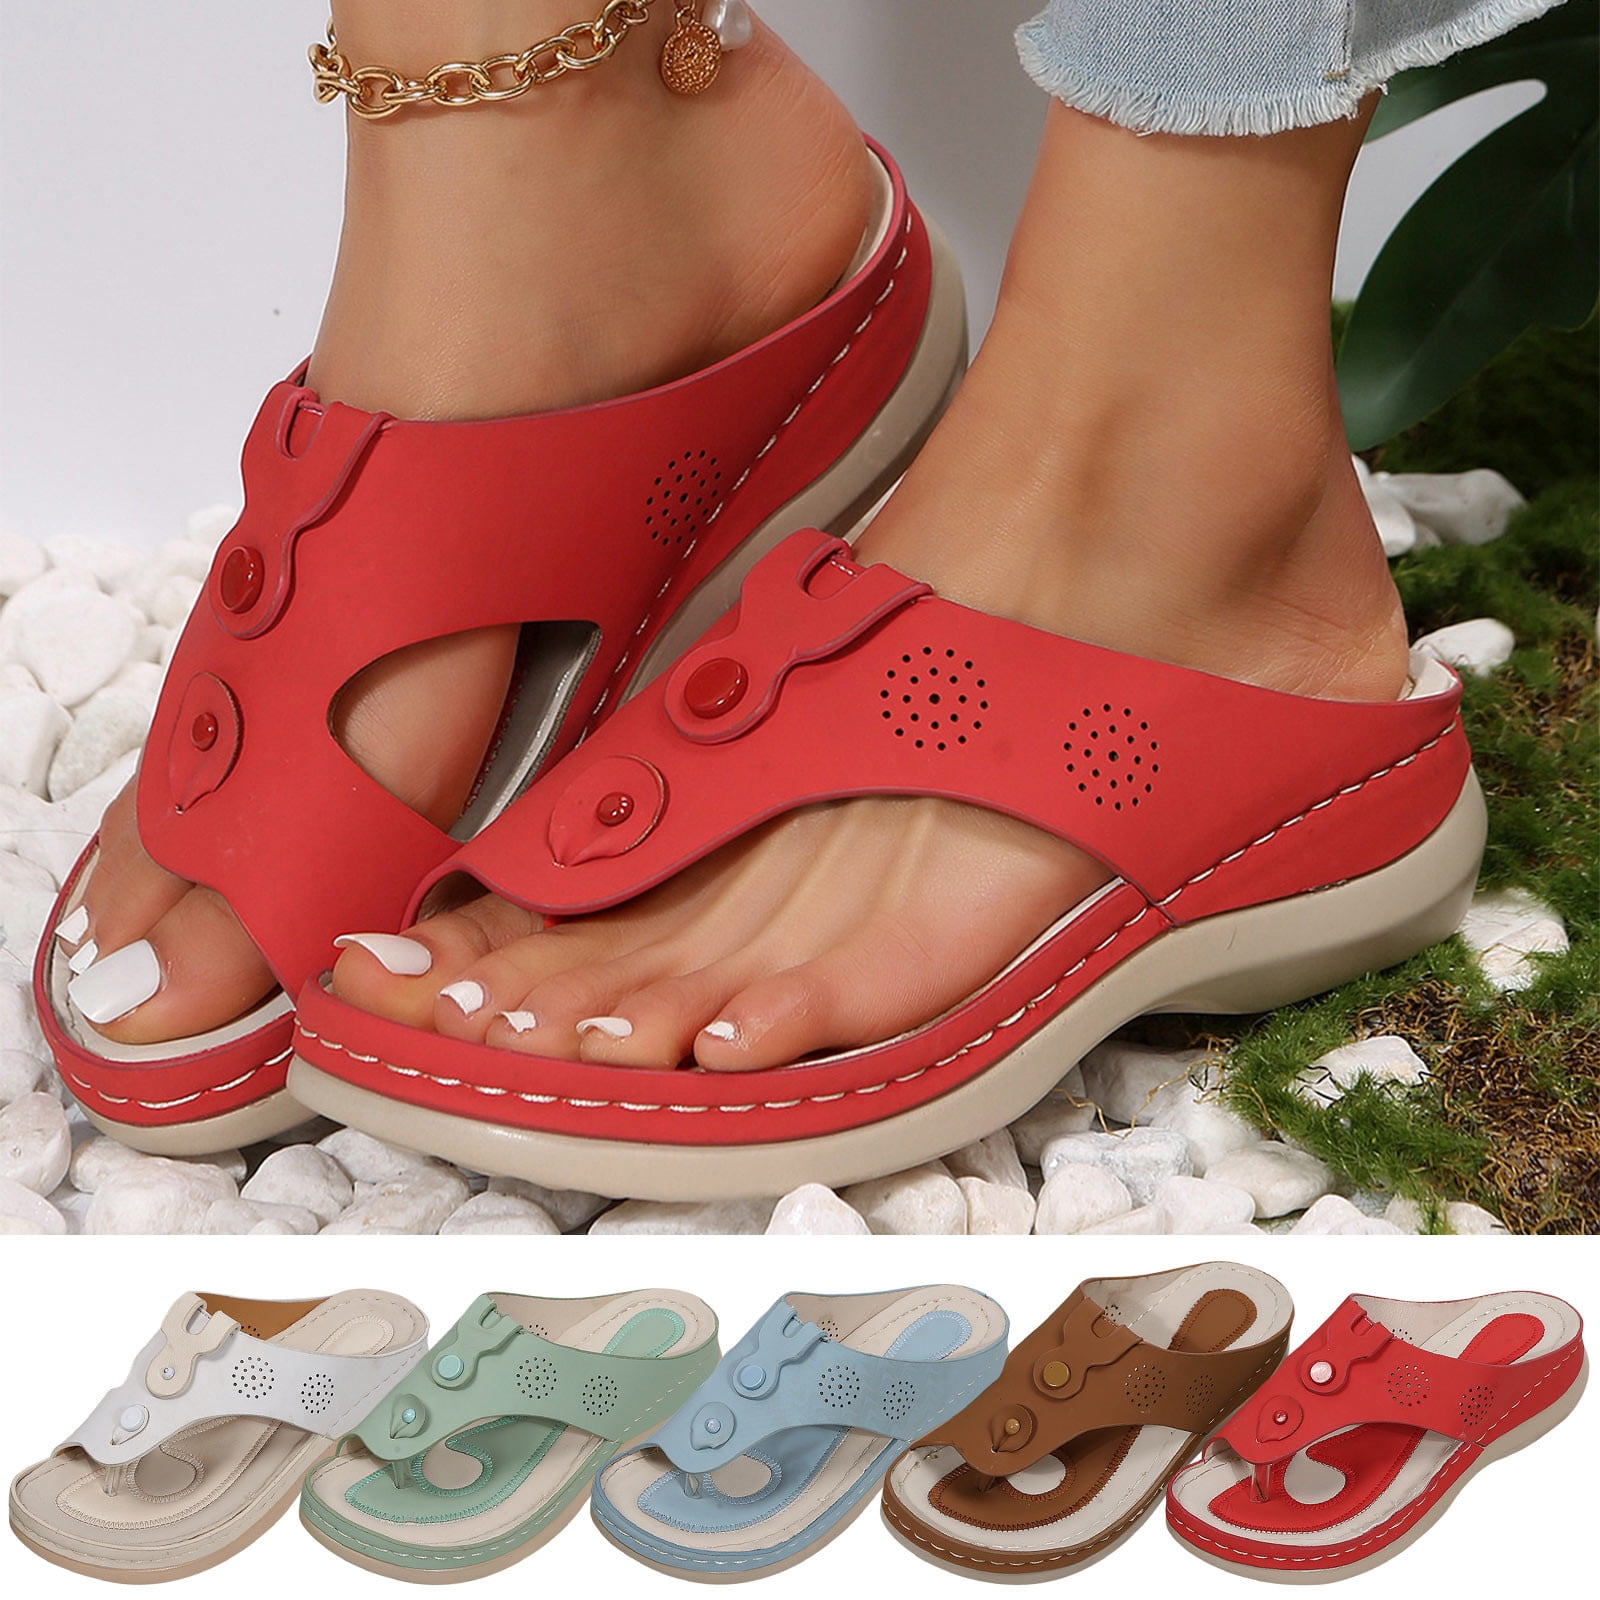 Cethrio Womens Summer Comfort Flats Sandals- Wide Width Flat Beach ...